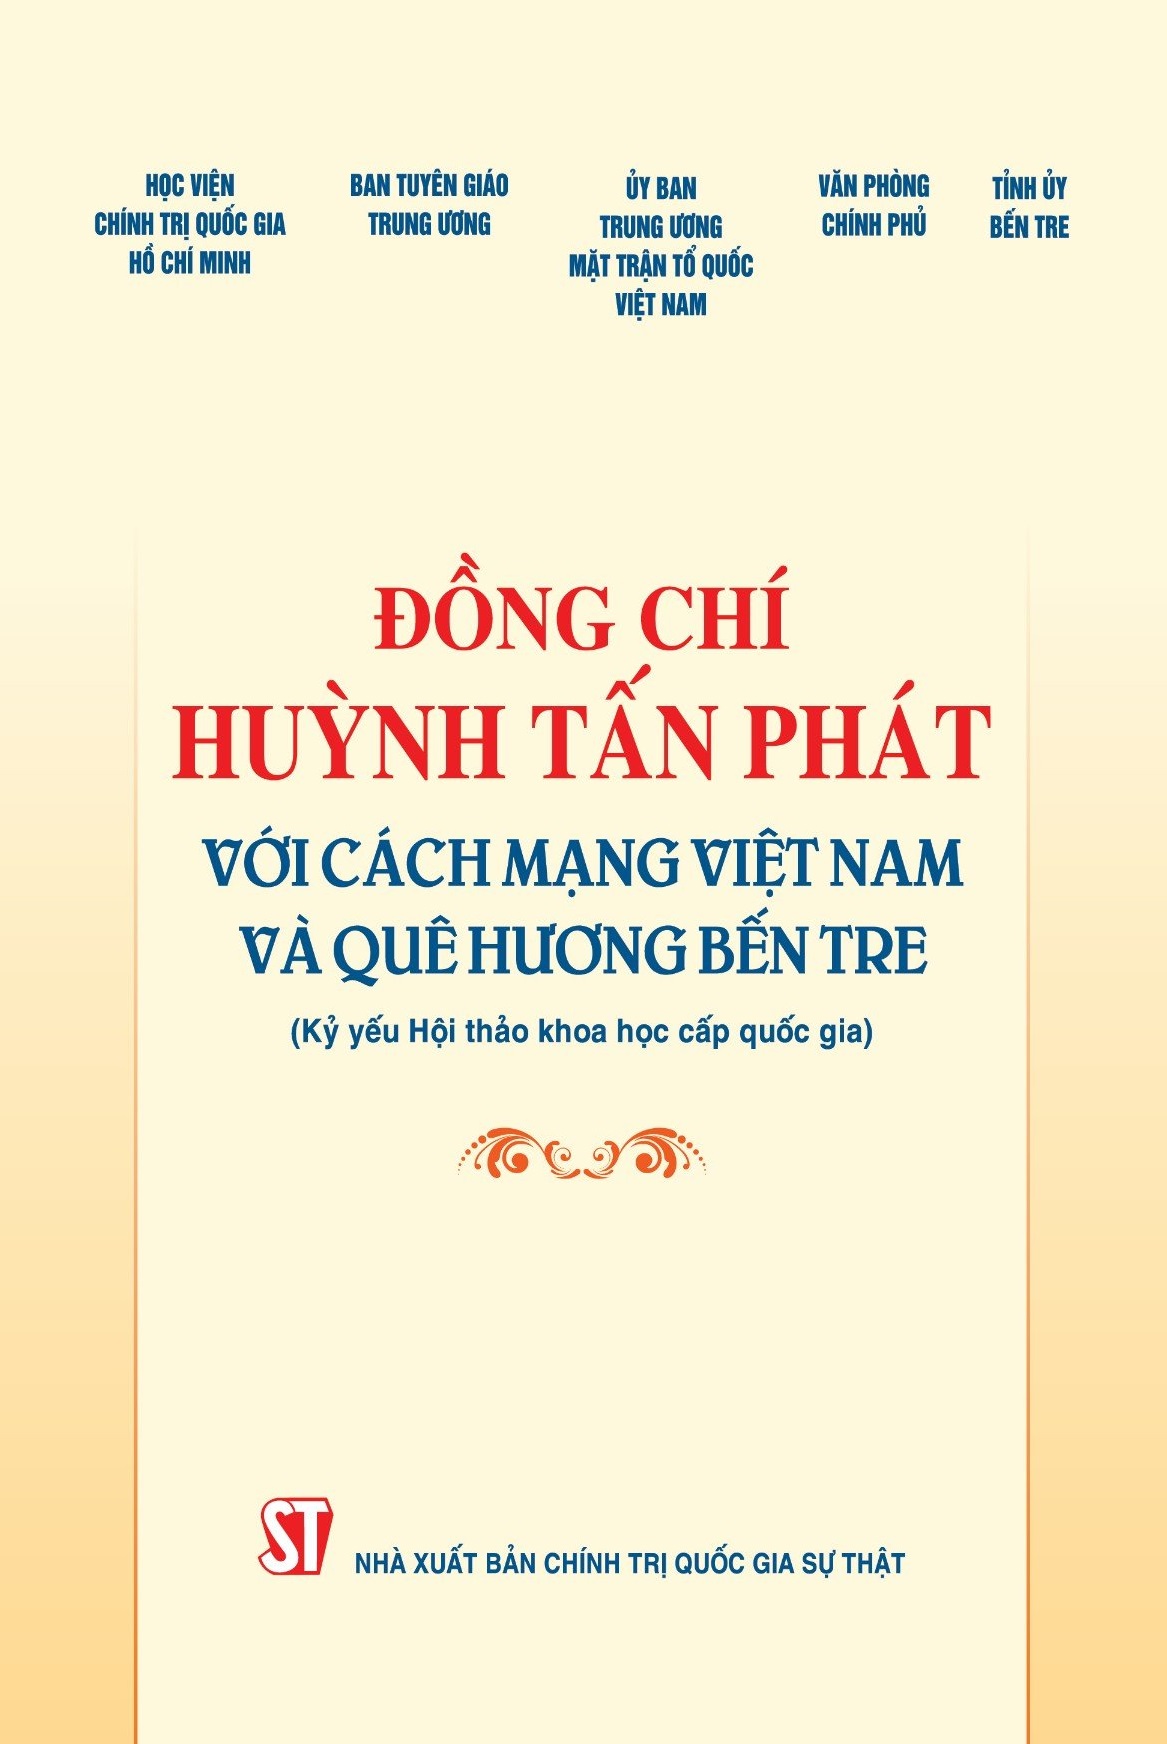 Đồng chí Huỳnh Tấn Phát với cách mạng Việt Nam và quê hương Bến Tre (Kỷ yếu Hội thảo khoa học cấp quốc gia)